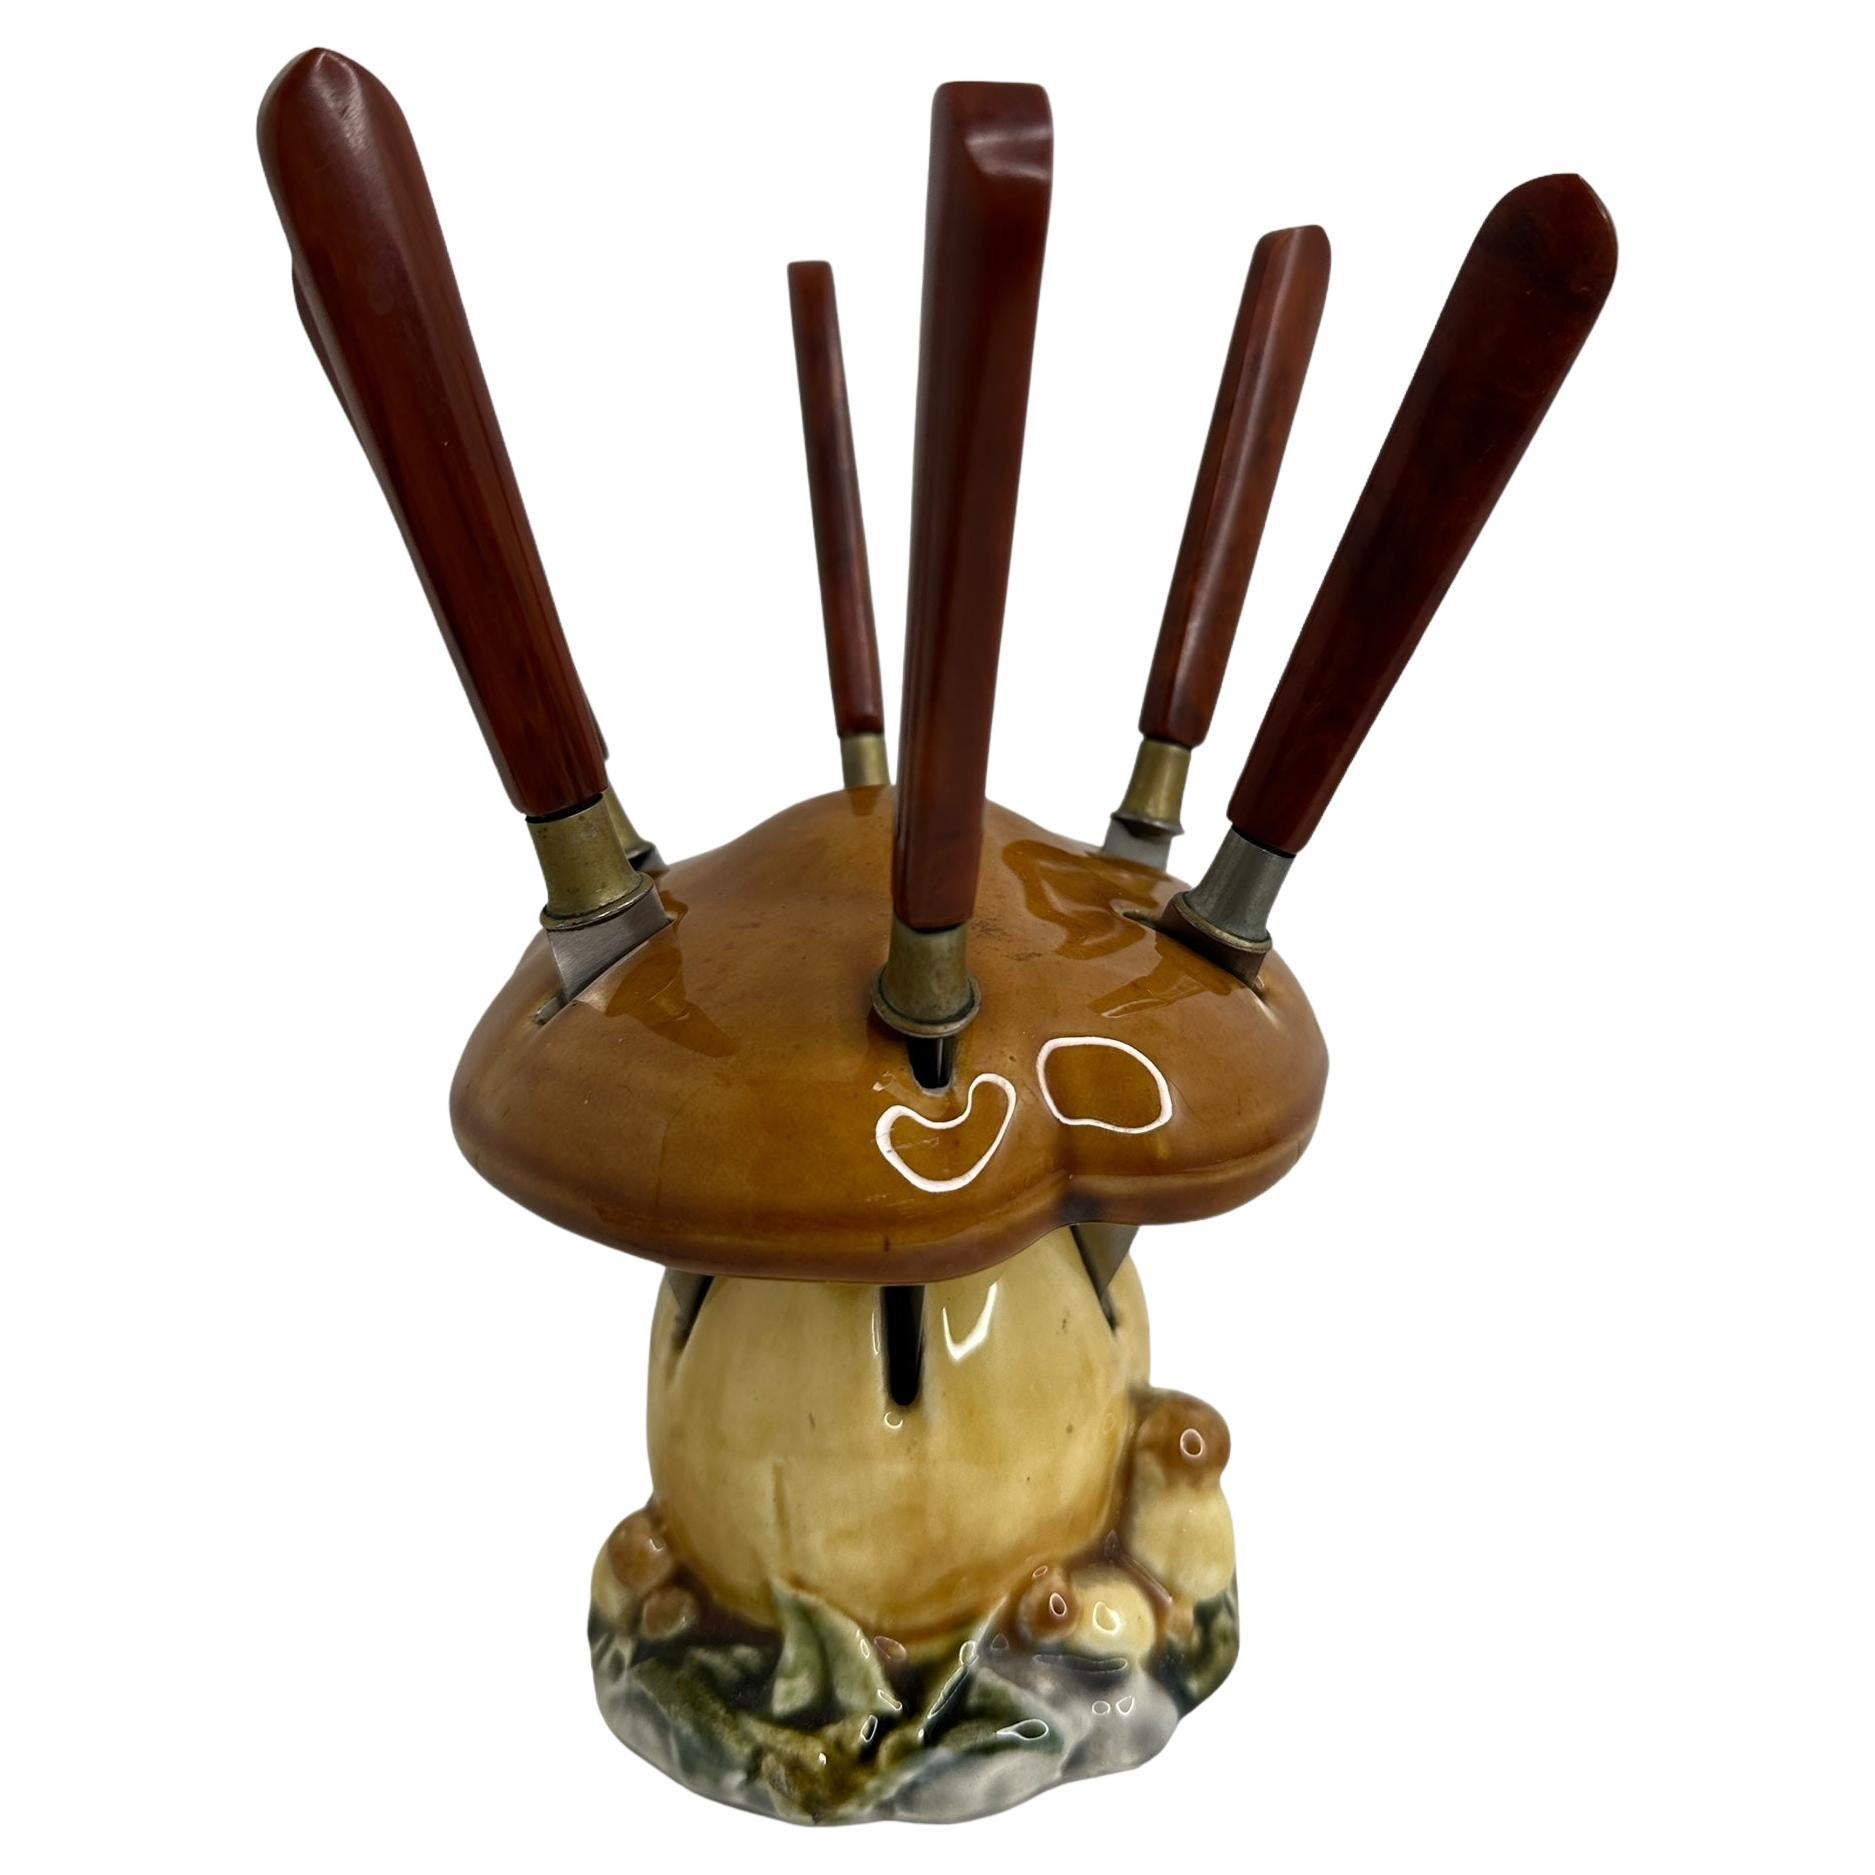 Bakelite Fruit Knife Set with Ceramic Mushroom Stand, Vintage German 1930s For Sale